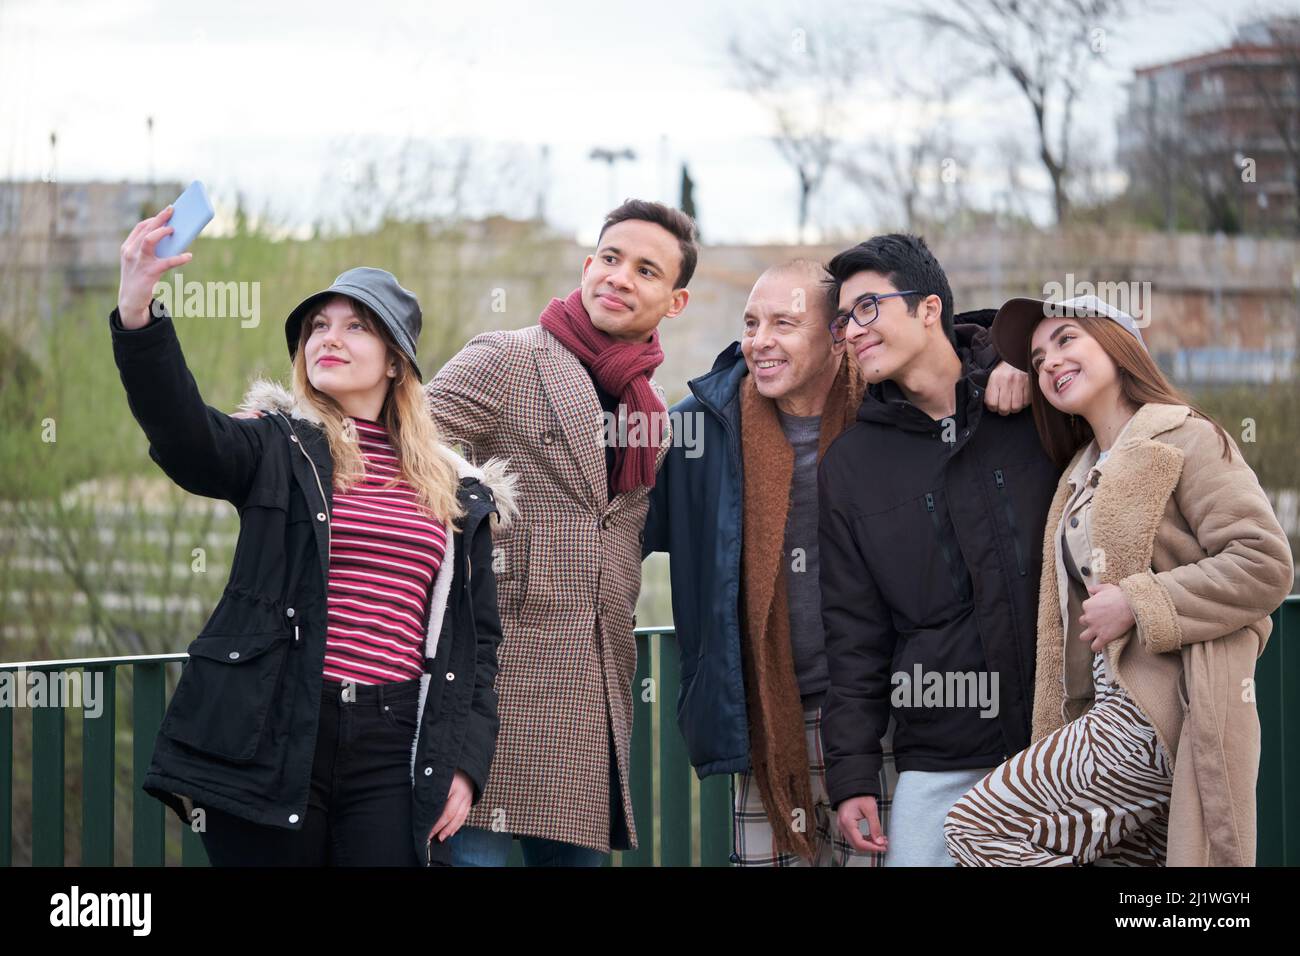 Gruppo di amici di diverse età ed etnie che prendono un selfie all'aperto. Foto Stock